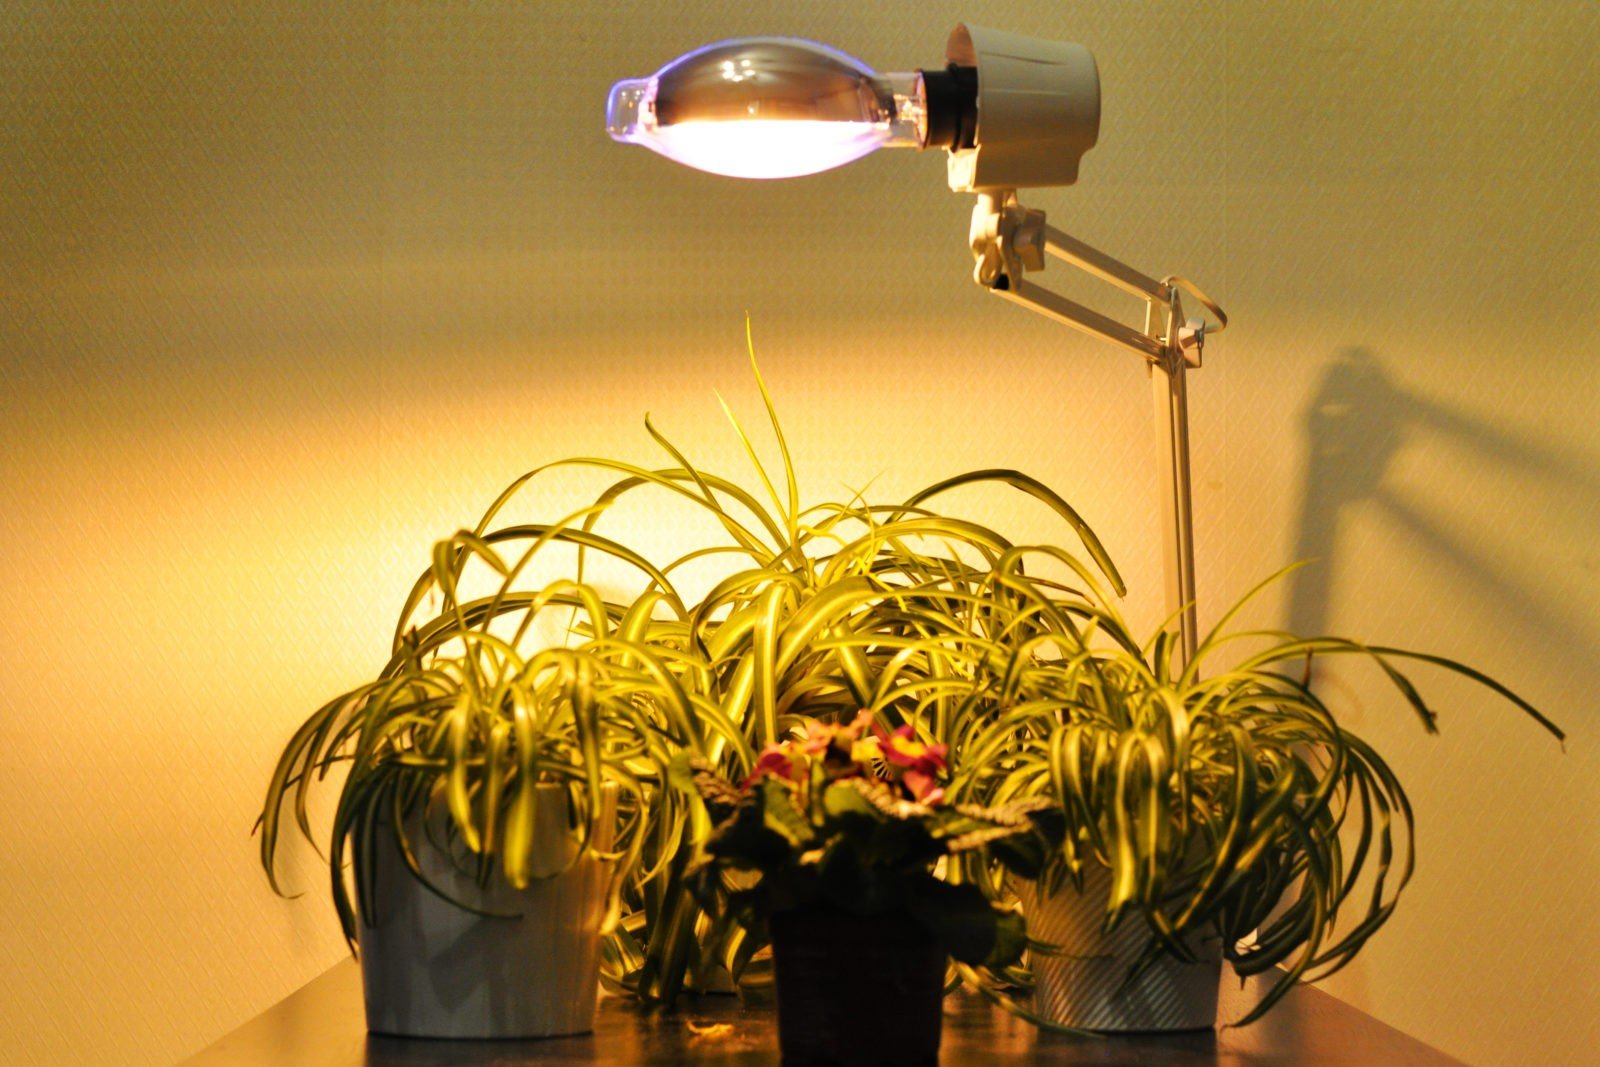 Примеры световых растений